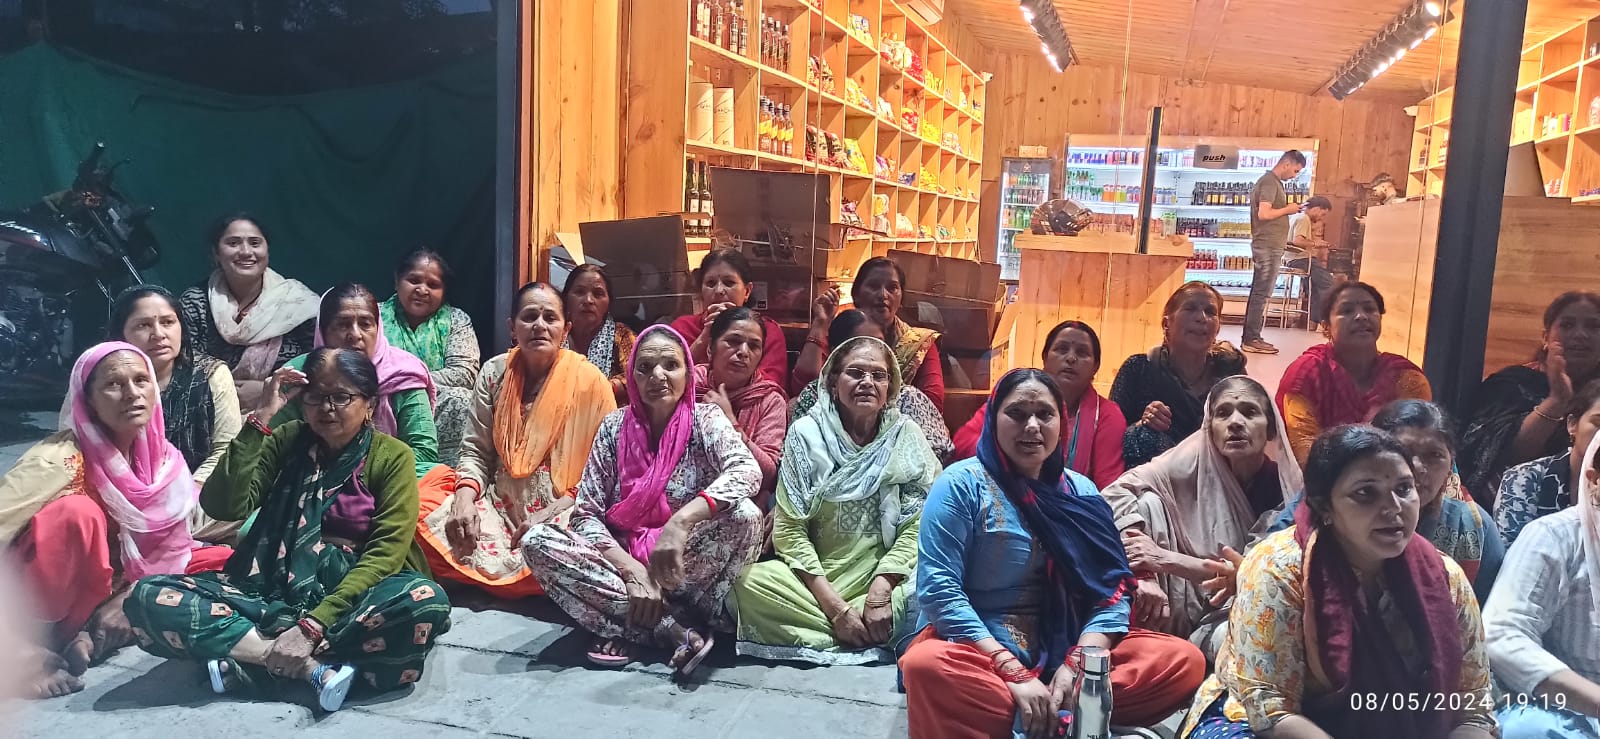 मसूरी भट्टा गांव में शराब की दुकान के विरोध में महिलाओं ने सरकार के खिलाफ की नारेबाजी